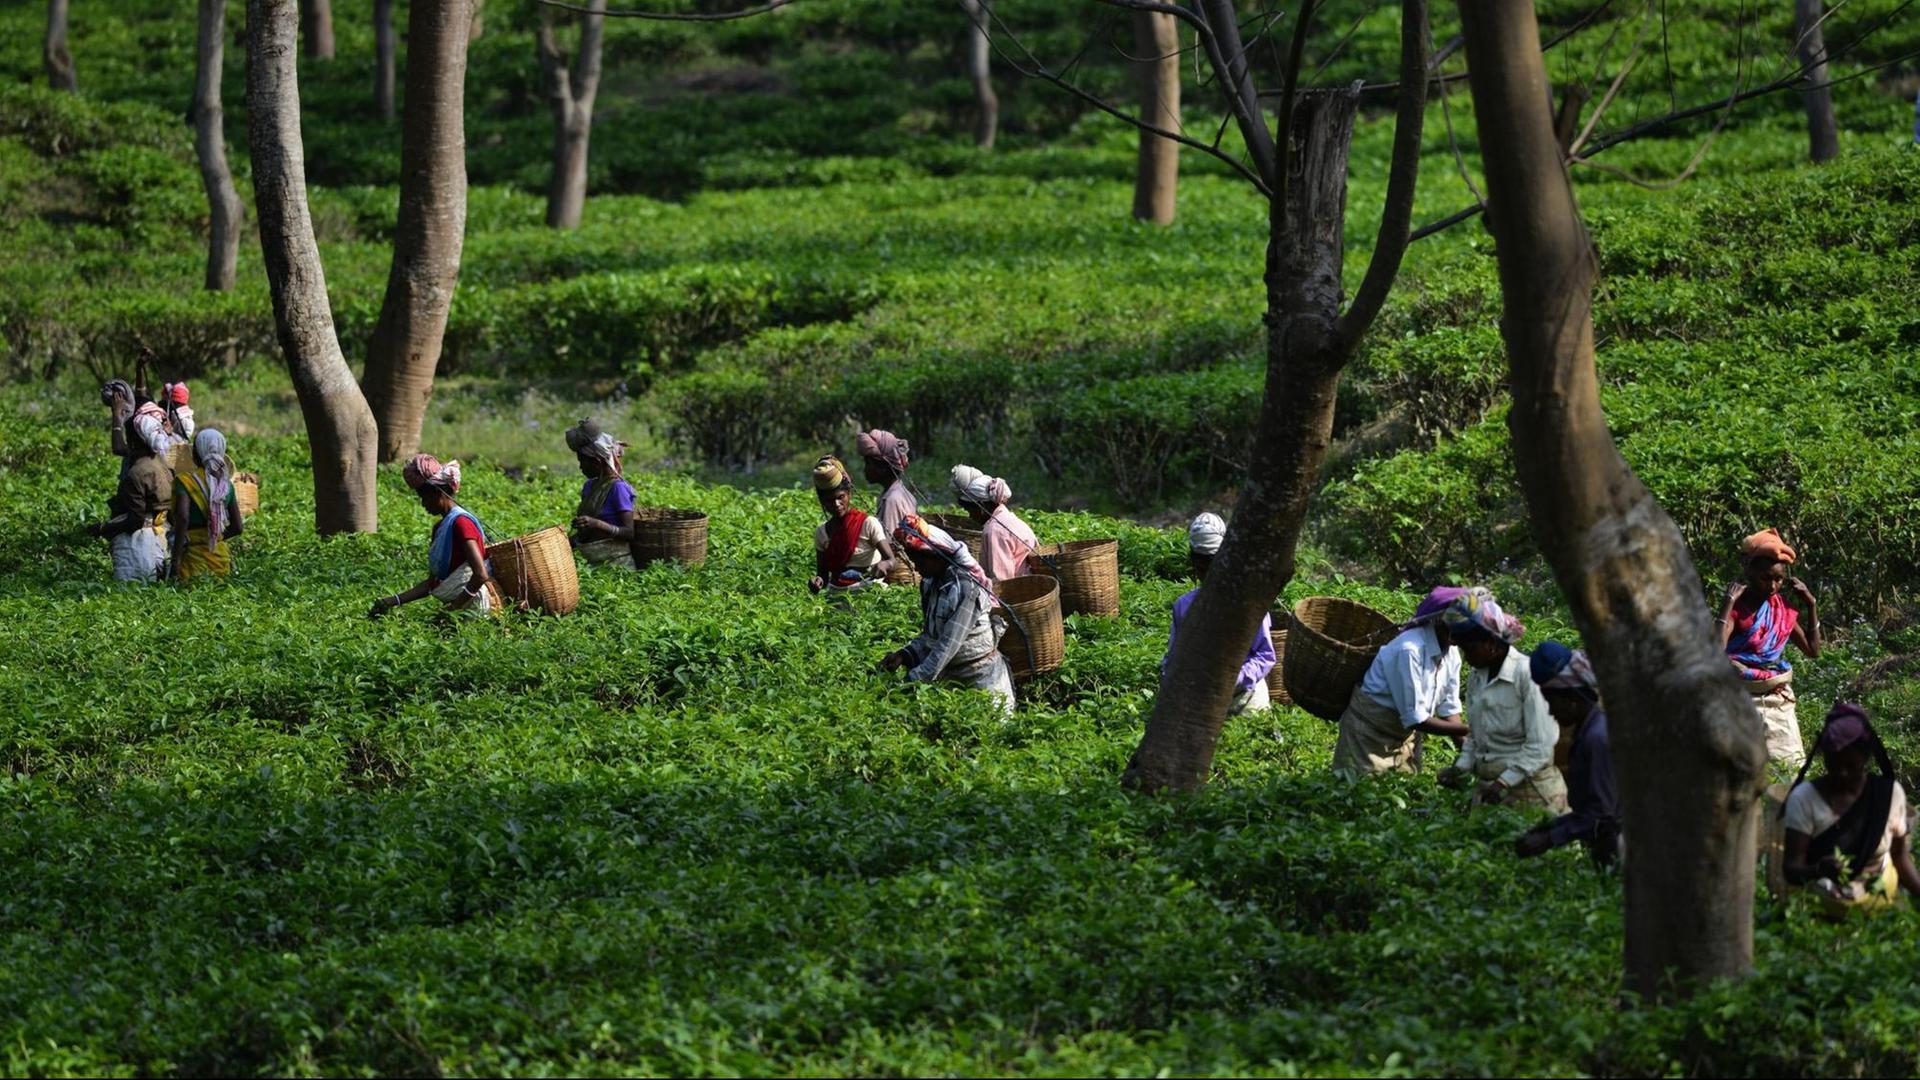 ARCHIV - 25.03.2016, Indien, Bokakhat: Teepflückerinnen arbeiten auf einer Teeplantage bei Bokakhat im indischen Bundesstaat Assam. Die Nichtregierungsorganisation Oxfam hat den deutschen Teemarkt wegen der Arbeitsbedingungen auf Teeplantagen im indischen Assam kritisiert. Foto: epa/dpa +++ dpa-Bildfunk +++